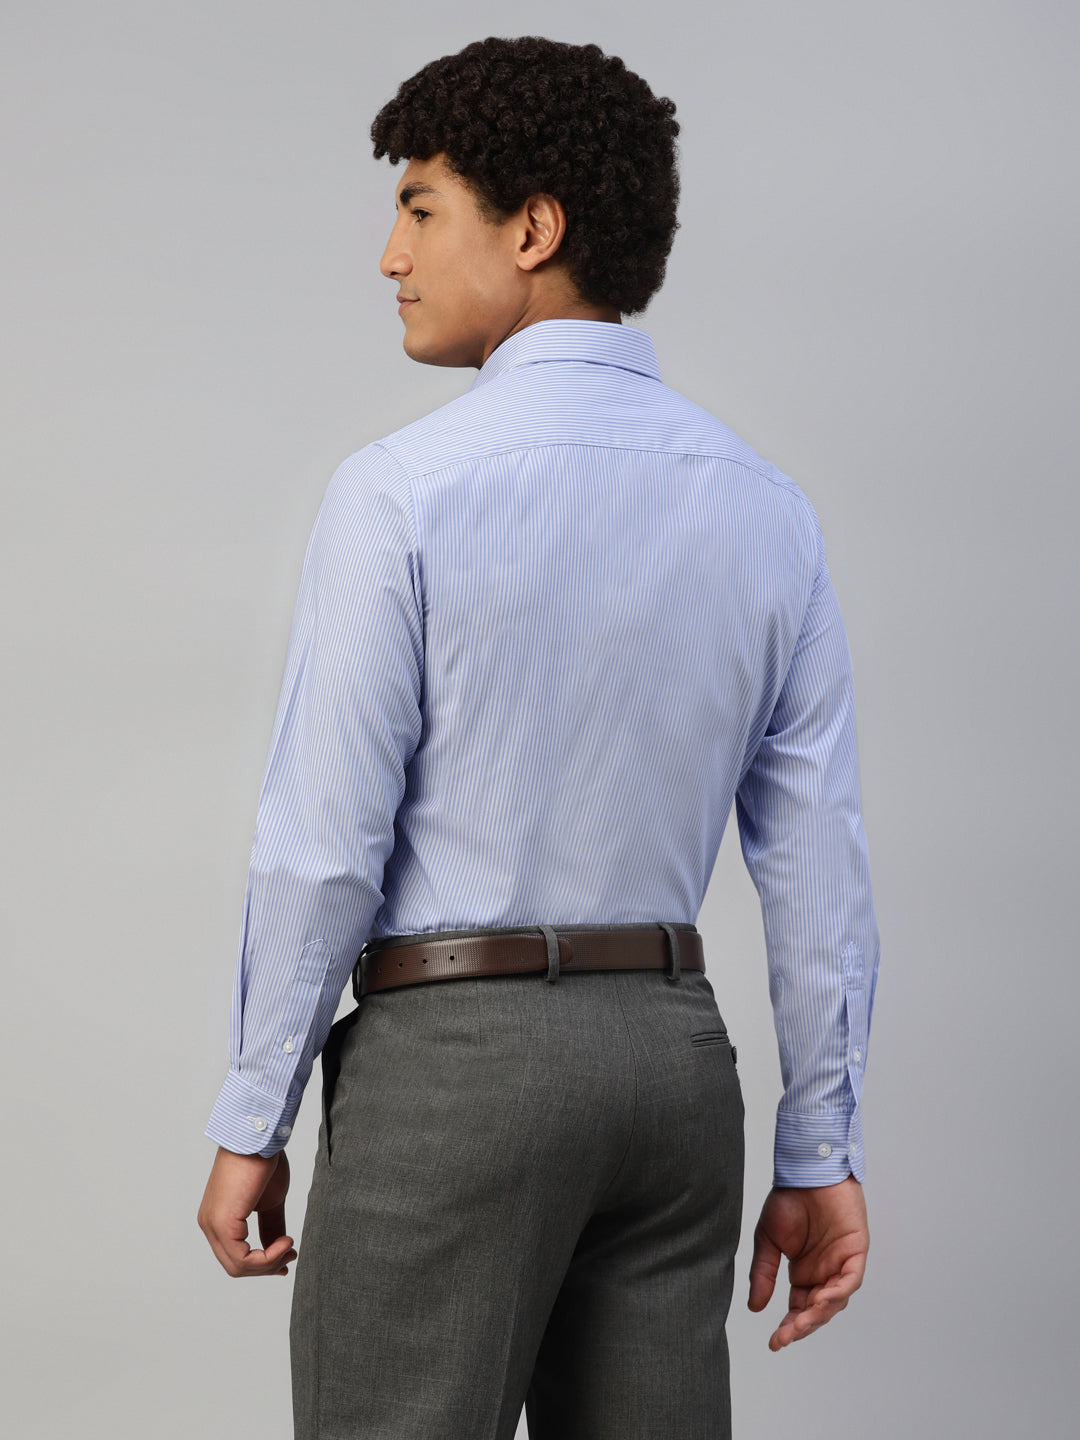 Don Vino Men's Multi Stripes Regular Fit Full Sleeve Shirt